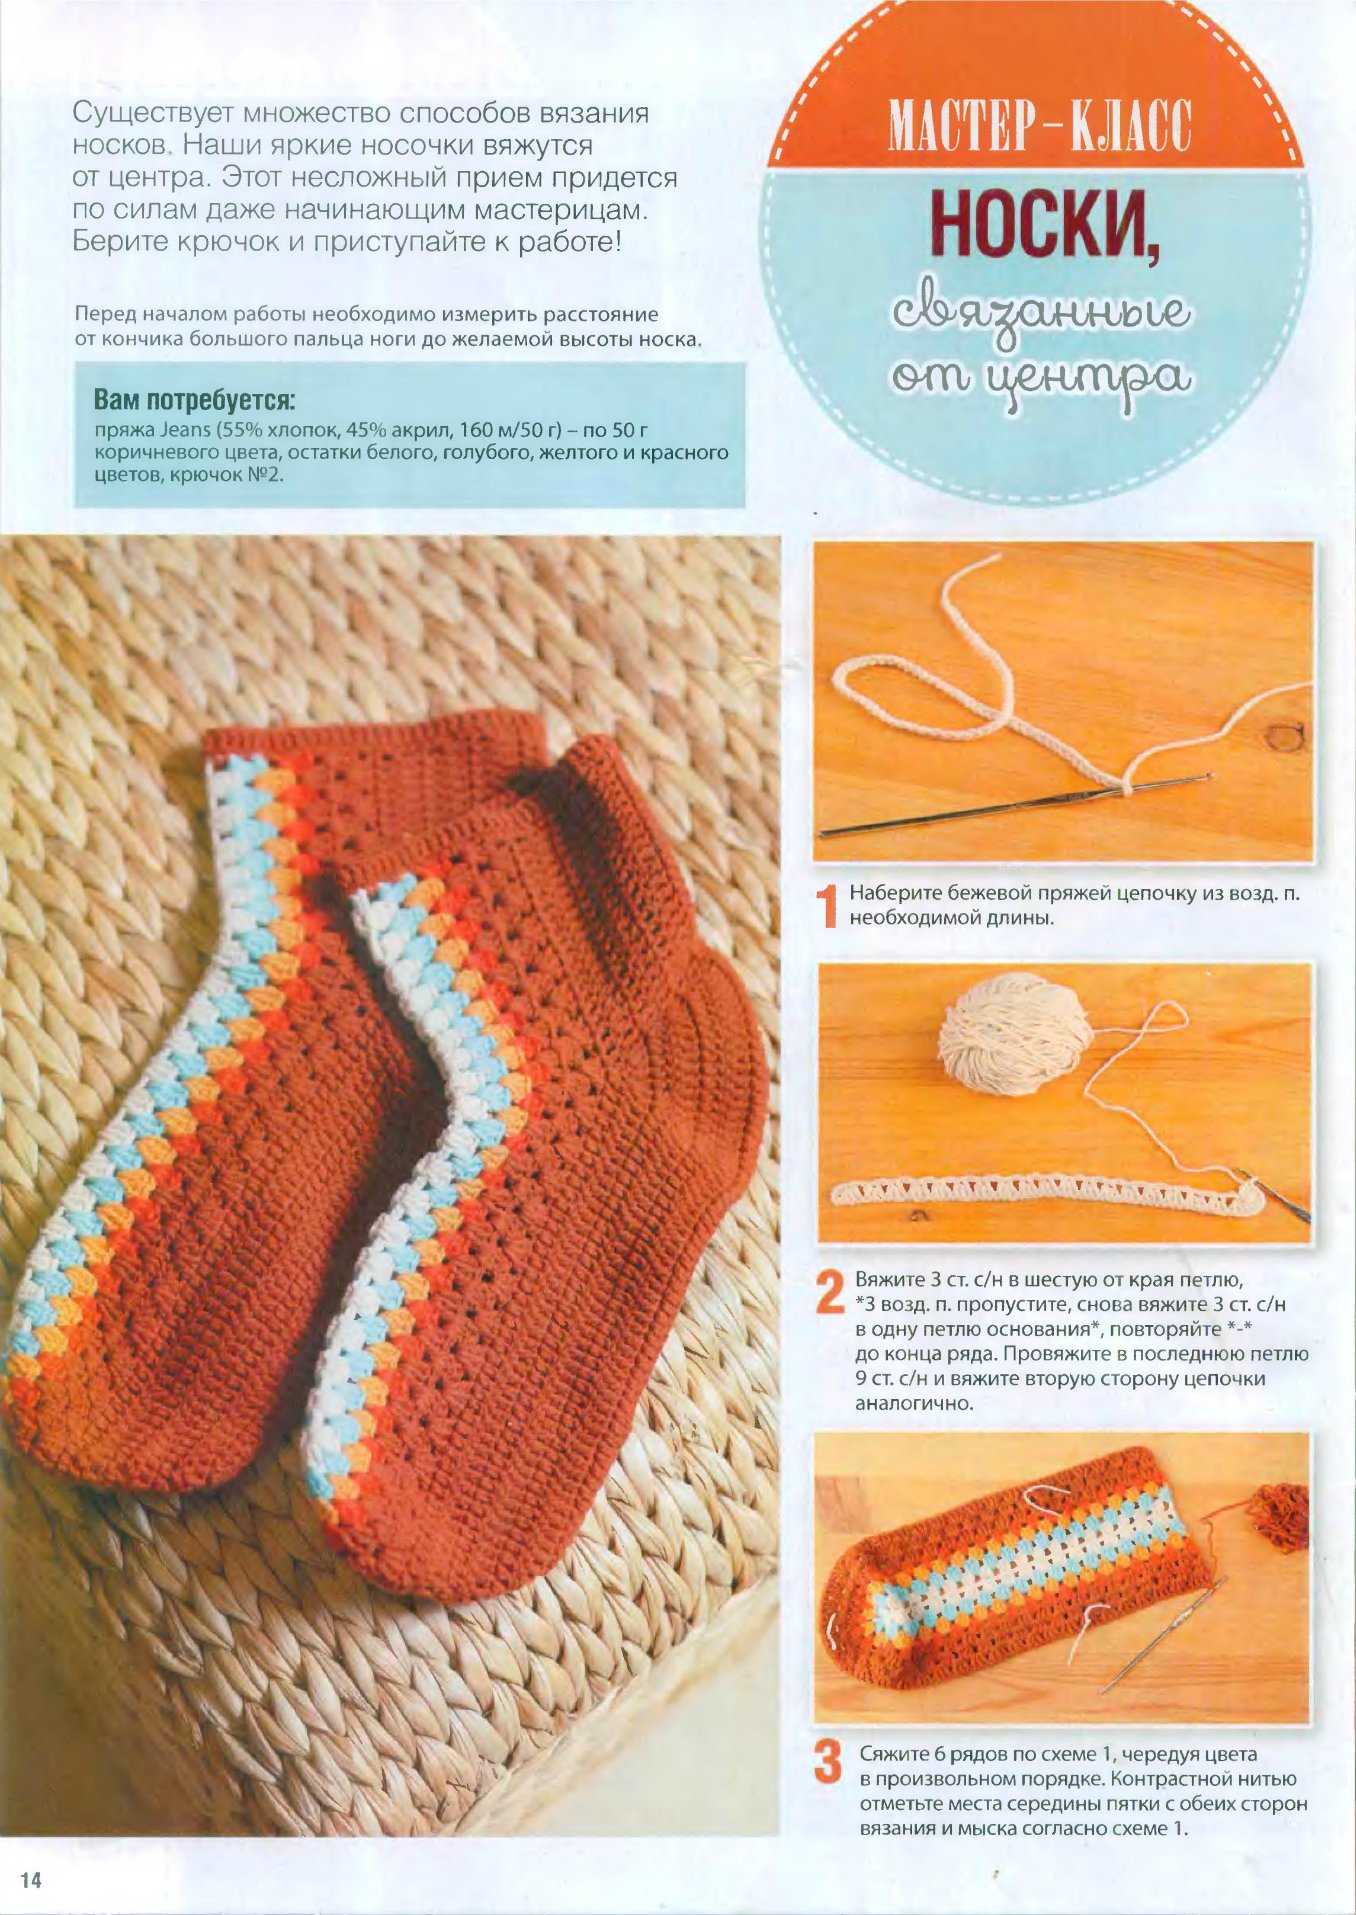 Как научиться вязать носки для начинающих